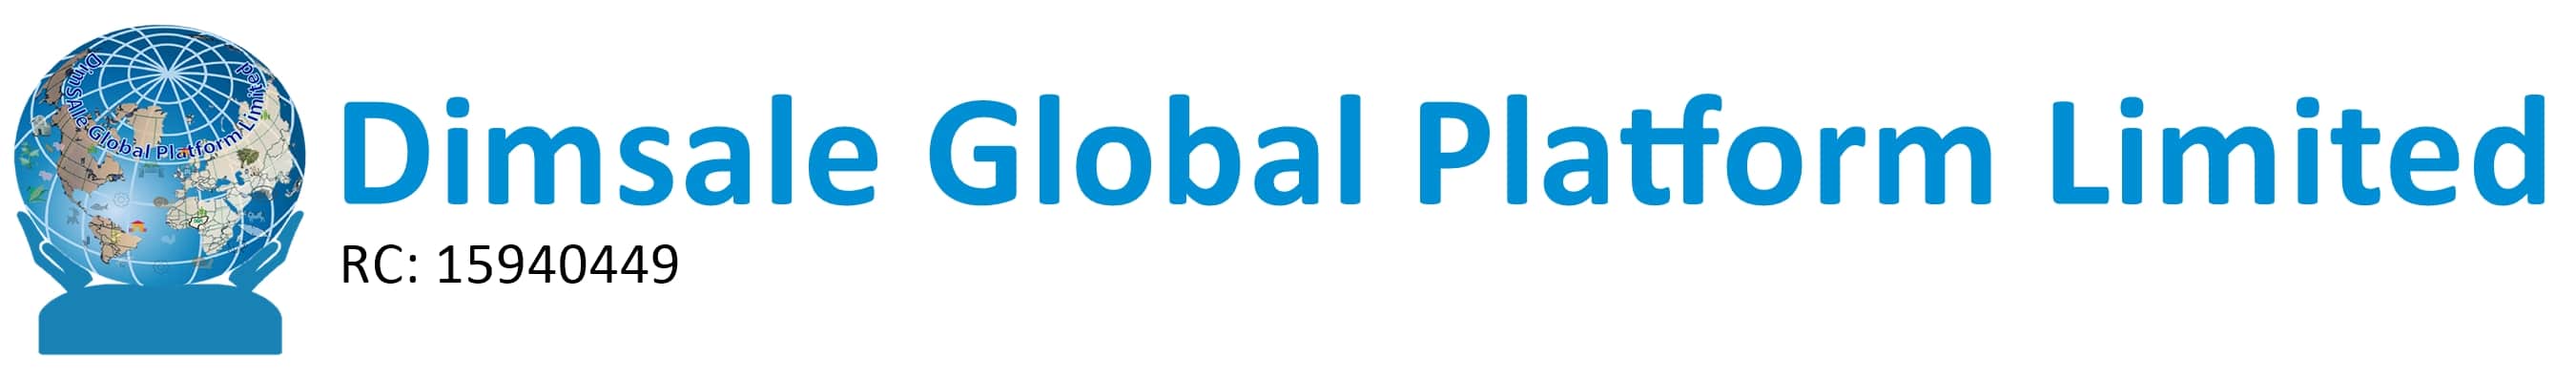 Dimsale Global Platform Limited